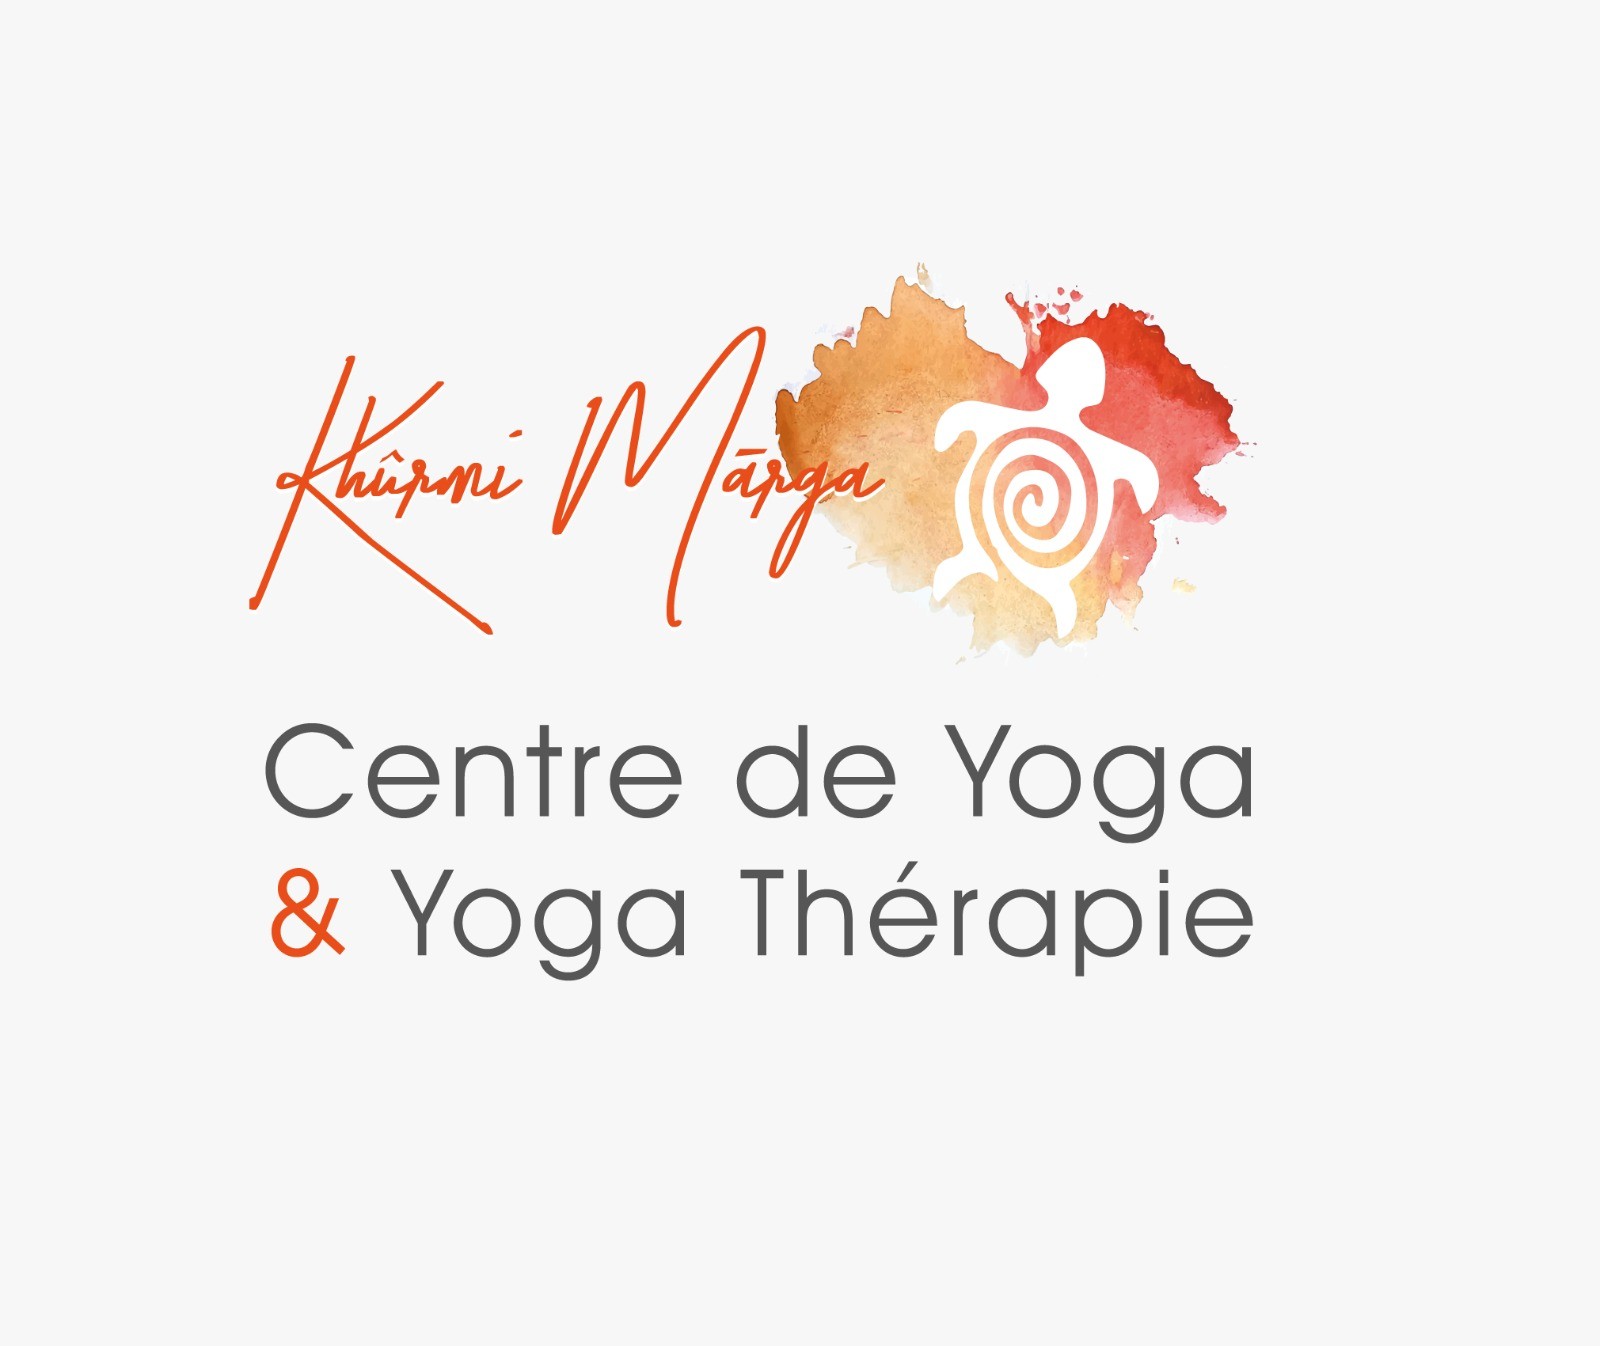 Centro de Yoga y Yoga Terapia